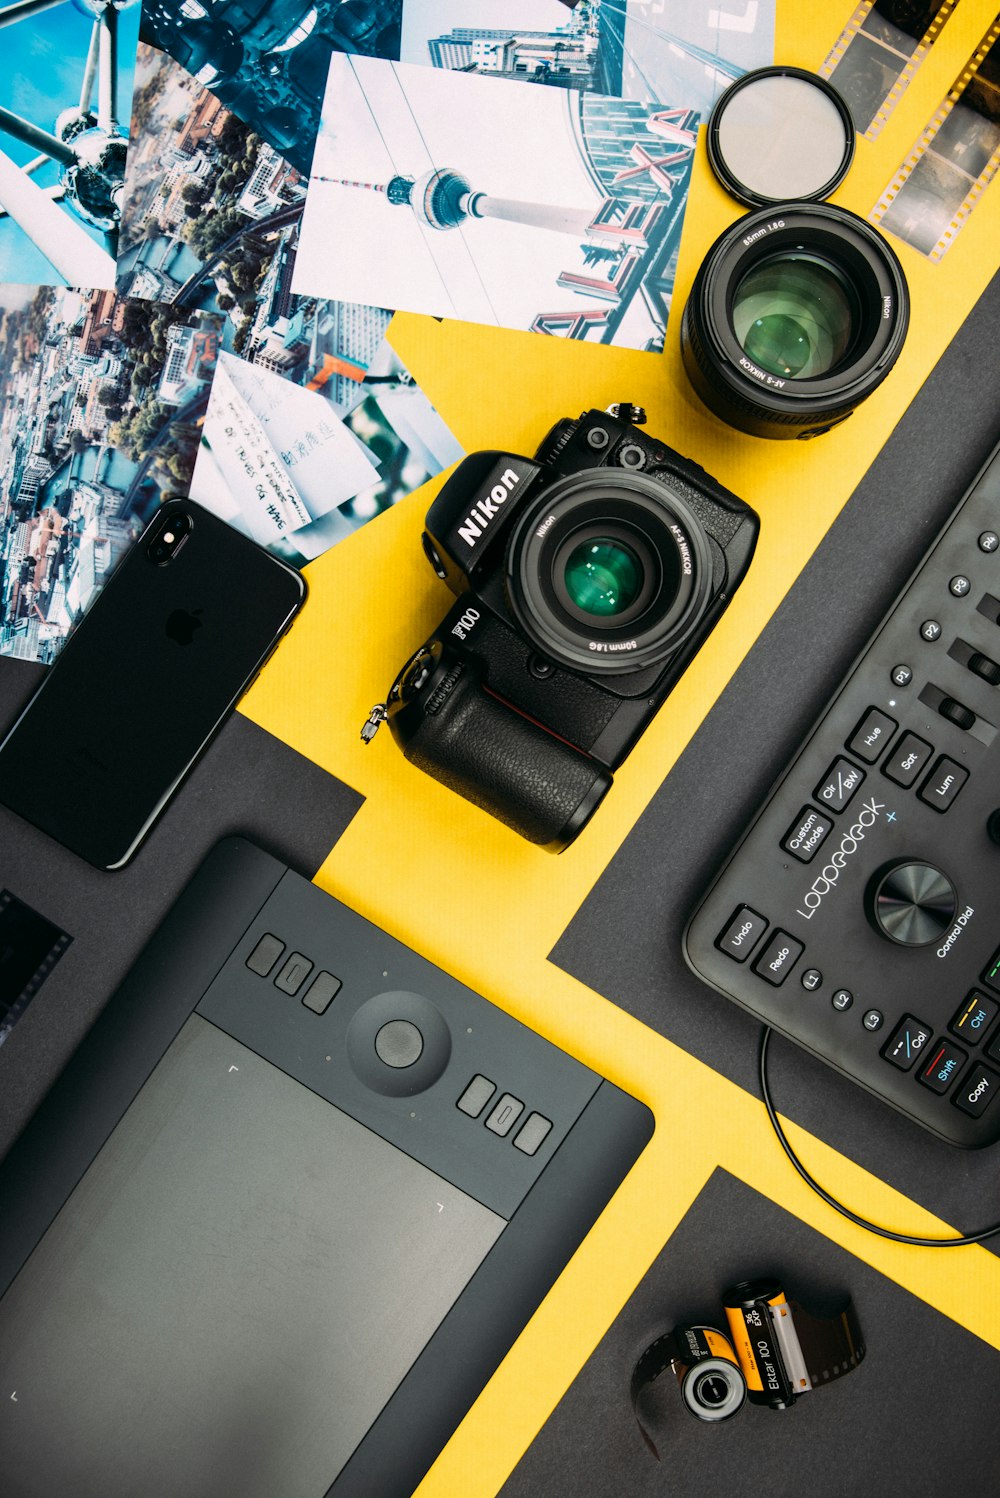 appareil photo reflex numérique Nikon noir à côté de l’iPhone X gris sidéral